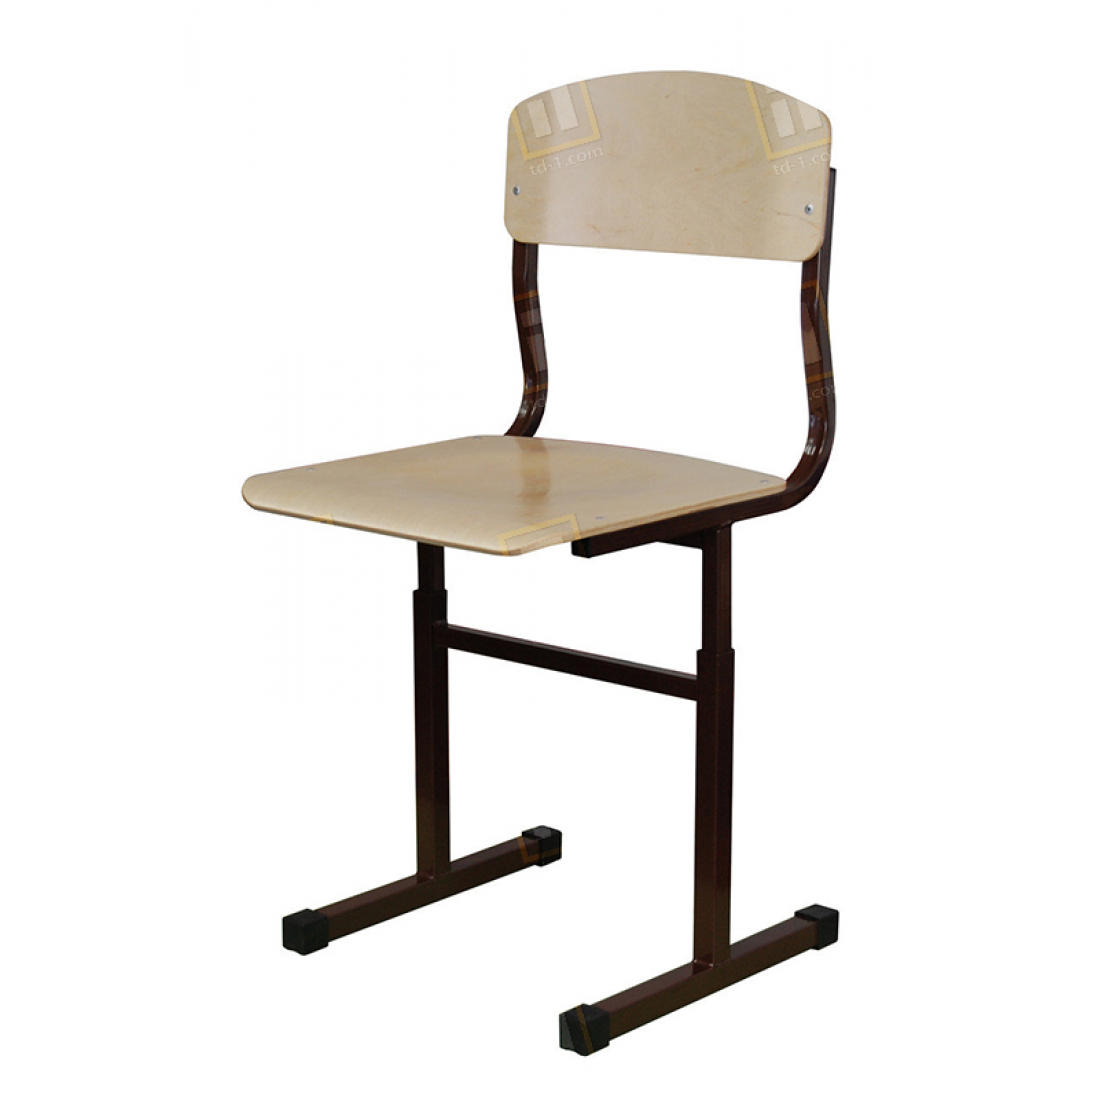 Выбираем удобный ортопедический стул для школьника